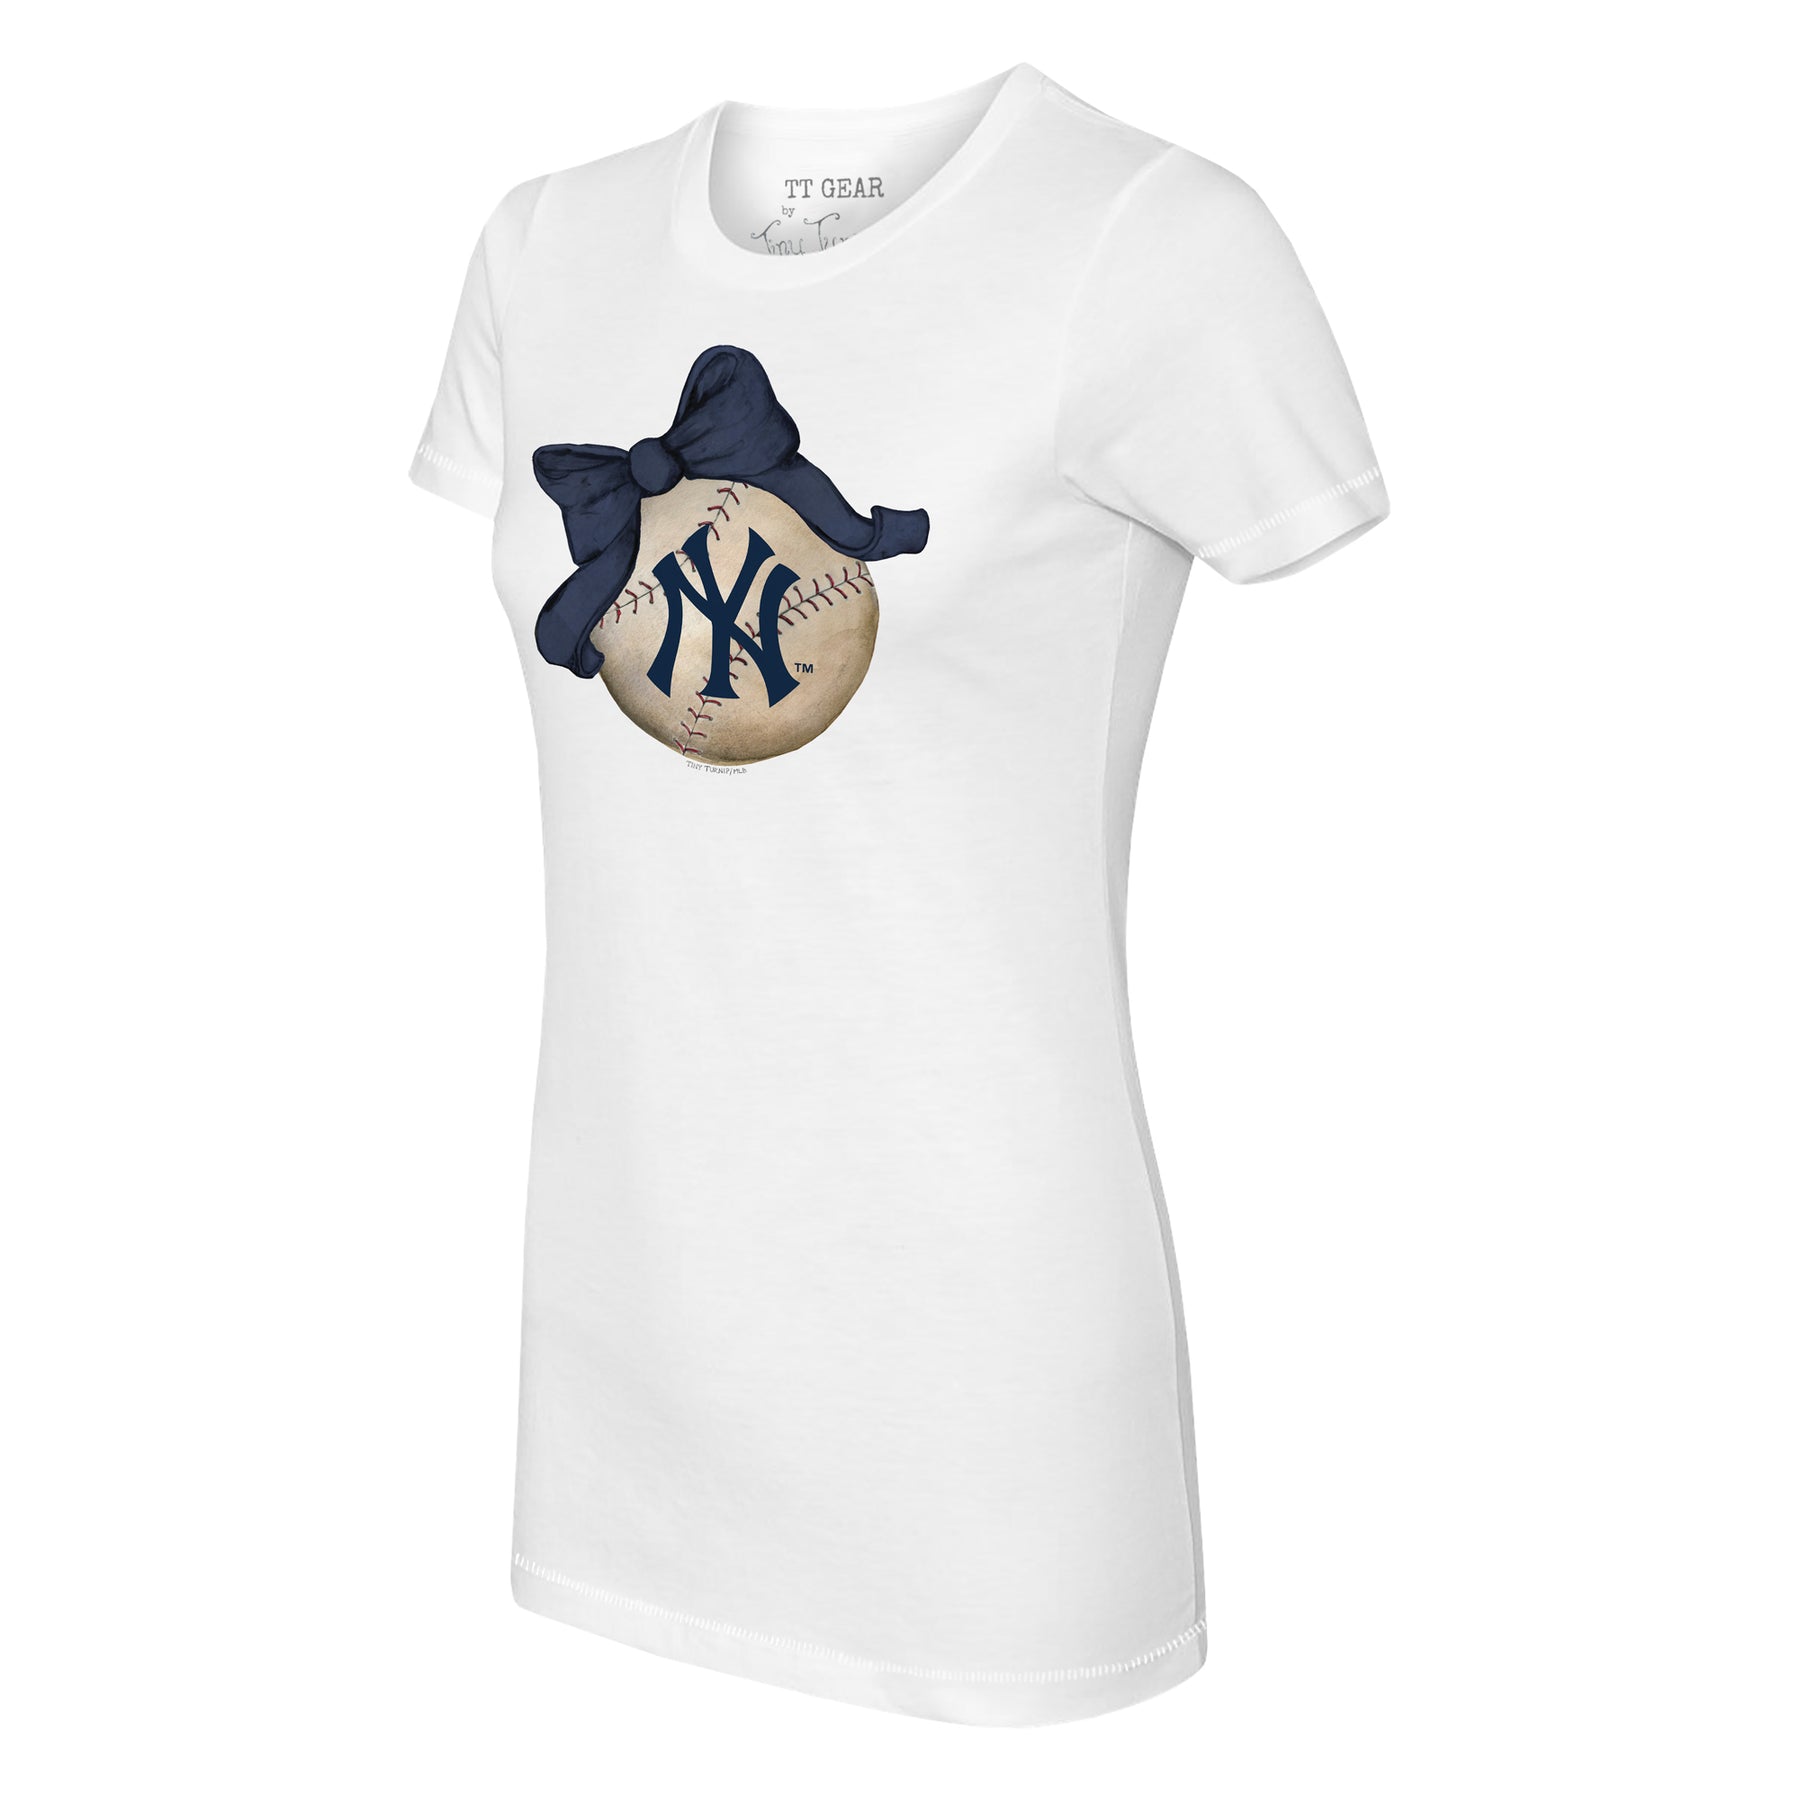 J.T. Realmuto Women's T-Shirt, Philadelphia Baseball Women's V-Neck T-Shirt